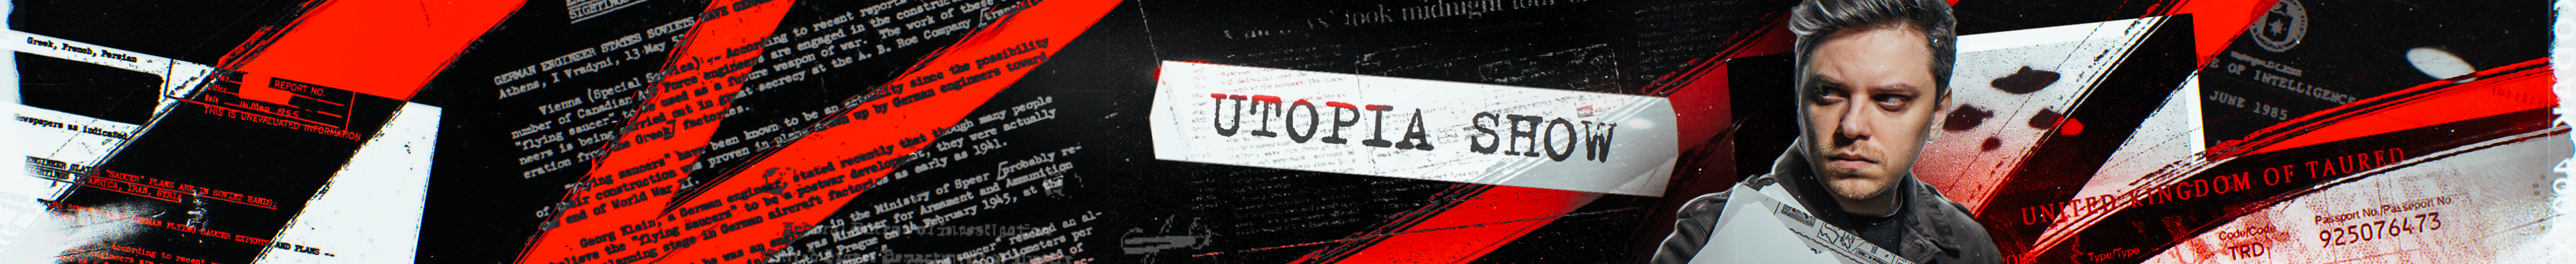 creator cover Utopia Show